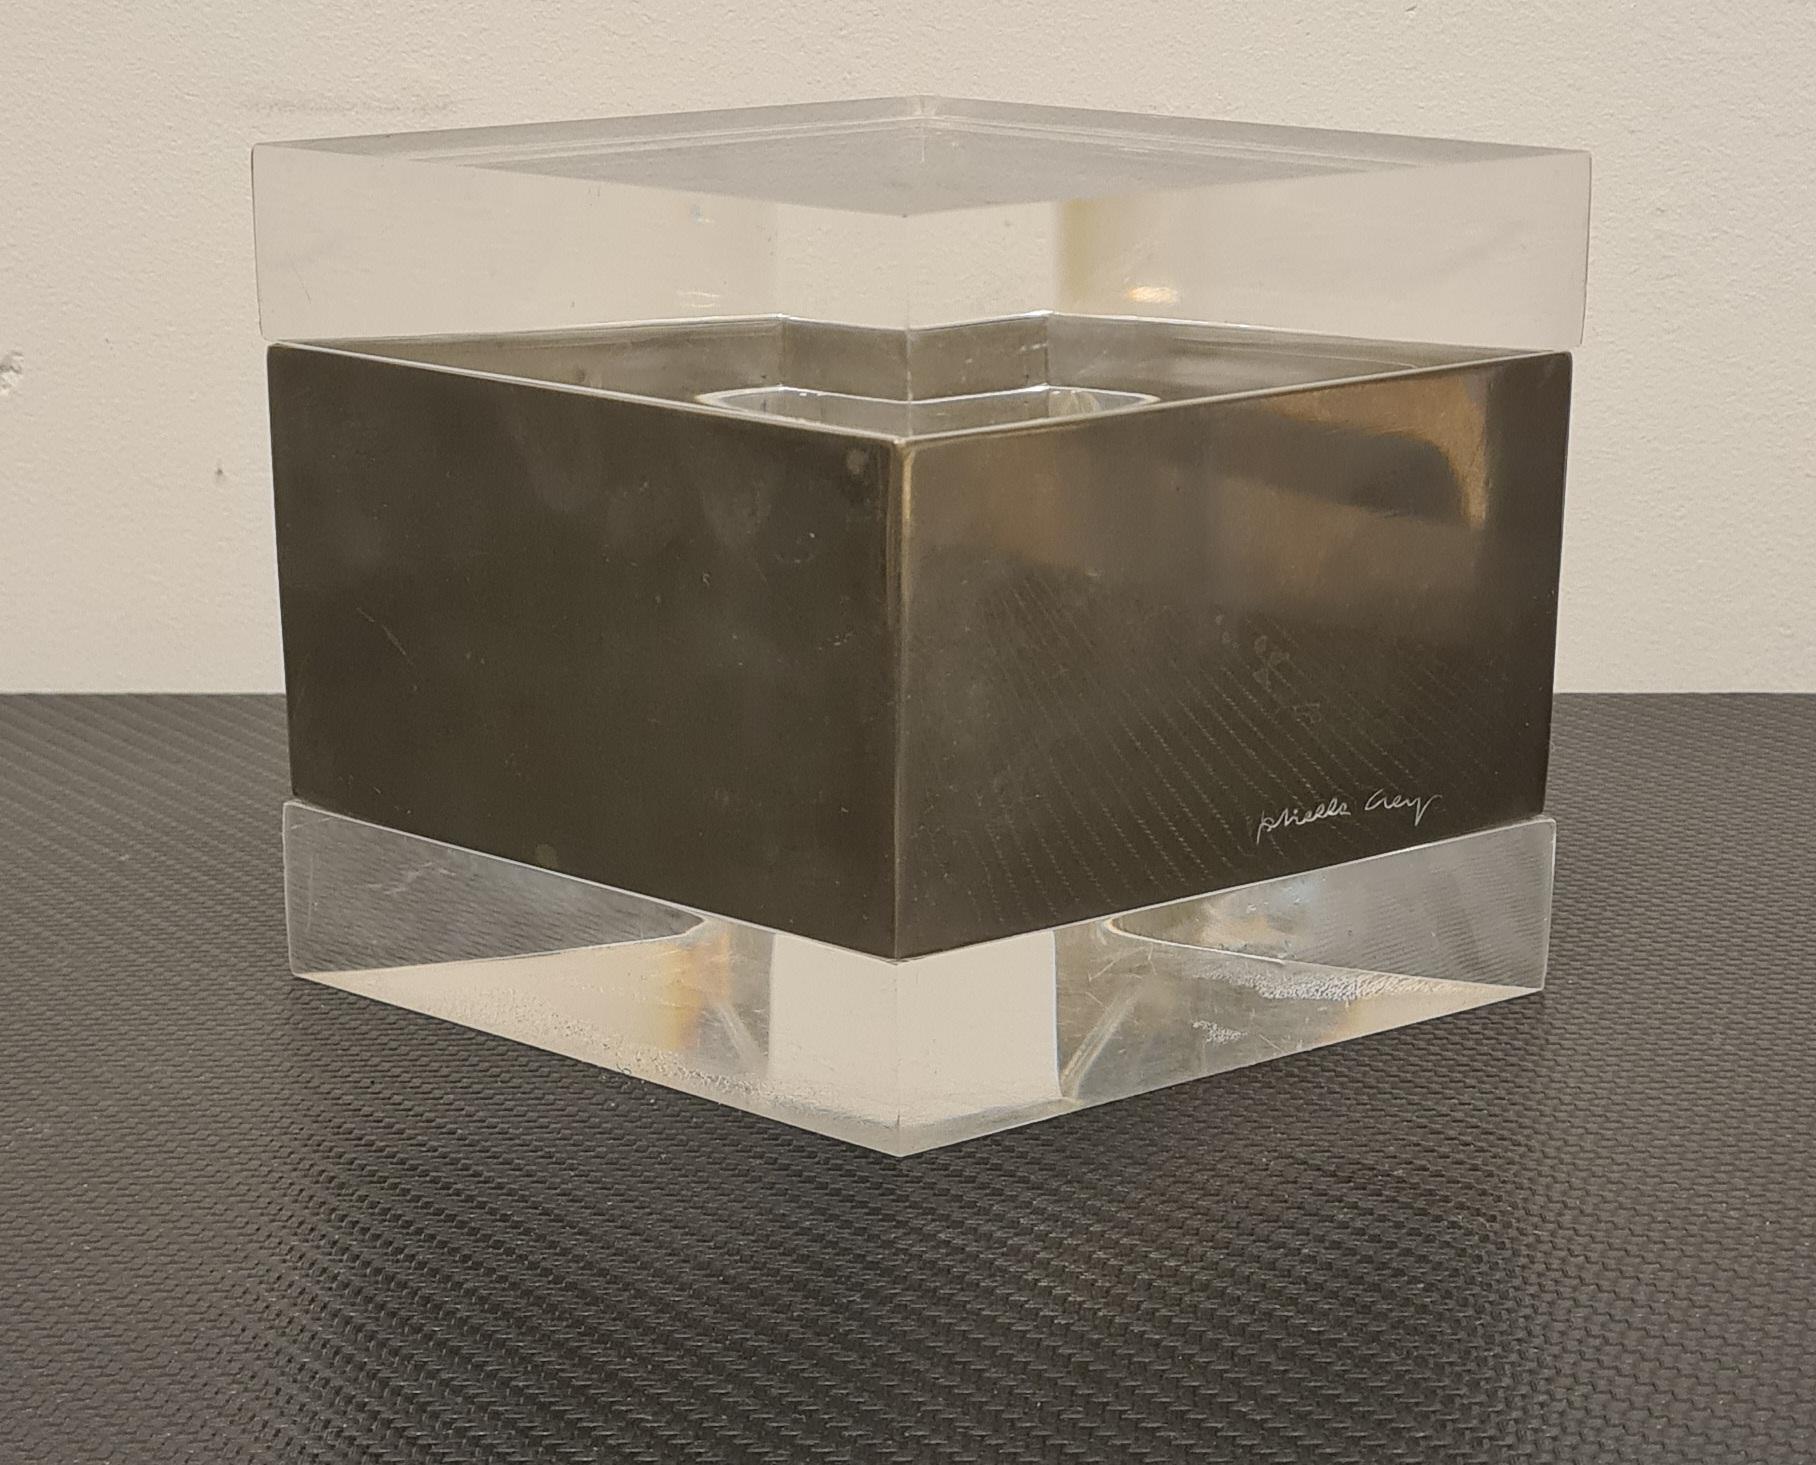 Schachtel mit Deckel der Designerin Gabriella Crespi.

Seltene und unverzichtbare rhombenförmige Dose aus Lucit und versilbertem Metall.

Lucite ist eine Variante von Polymethylmethacrylat, auch bekannt als Plexiglas oder Plexiglas. Dieses Material